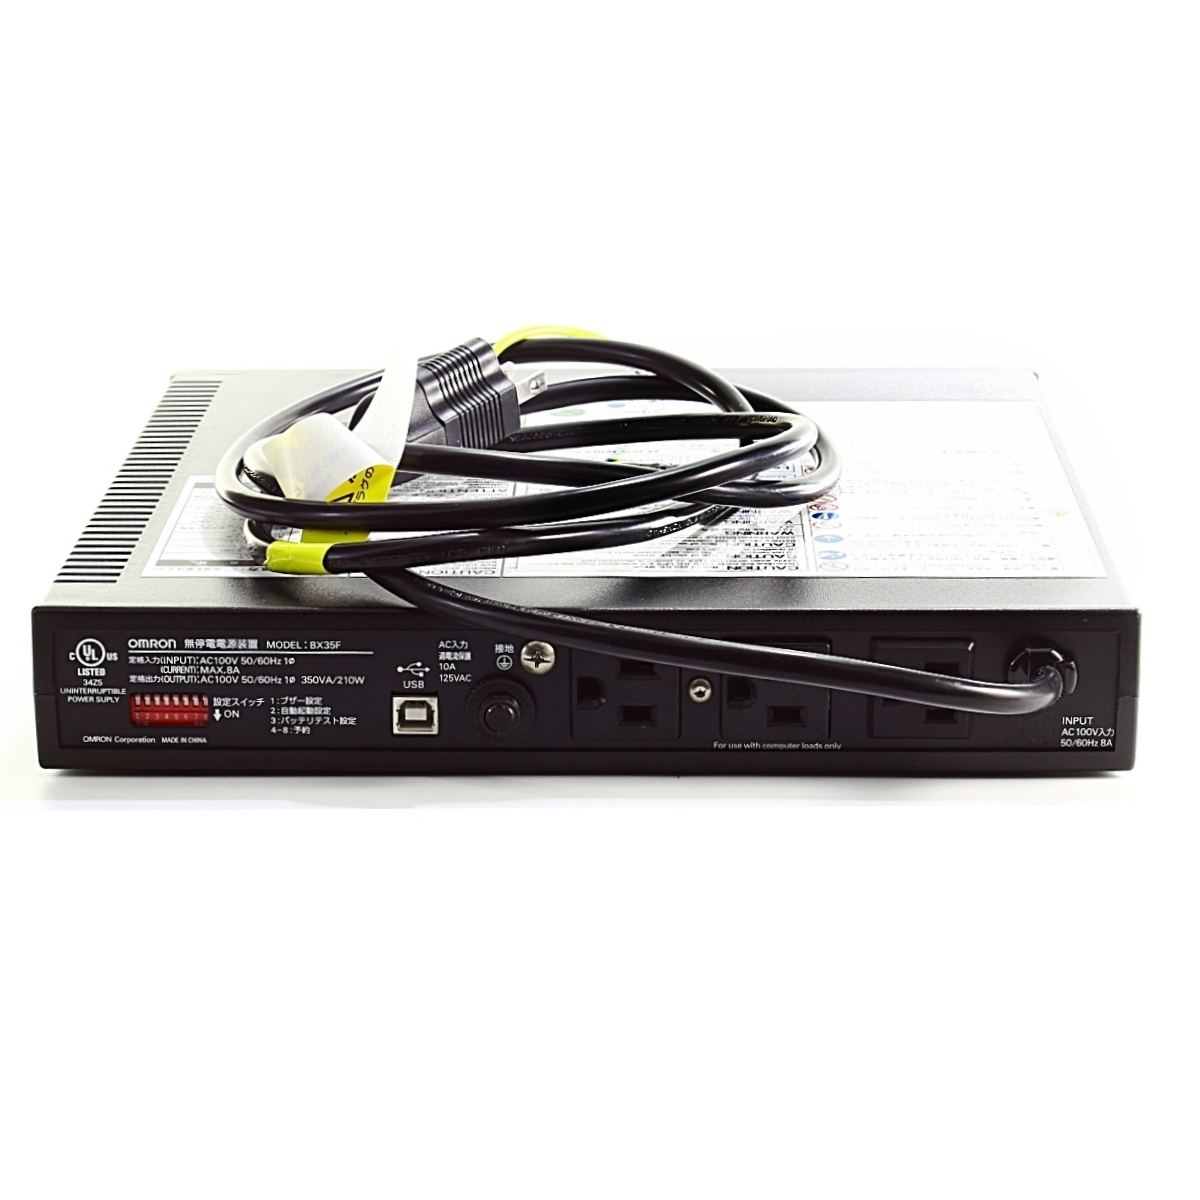 [ аккумулятор отдельный необходимо ][ электризация подтверждено ]OMRON POWLI BX35F UPS Omron USB соответствует источник бесперебойного питания SOHO* офис предназначенный 350VA / 210W